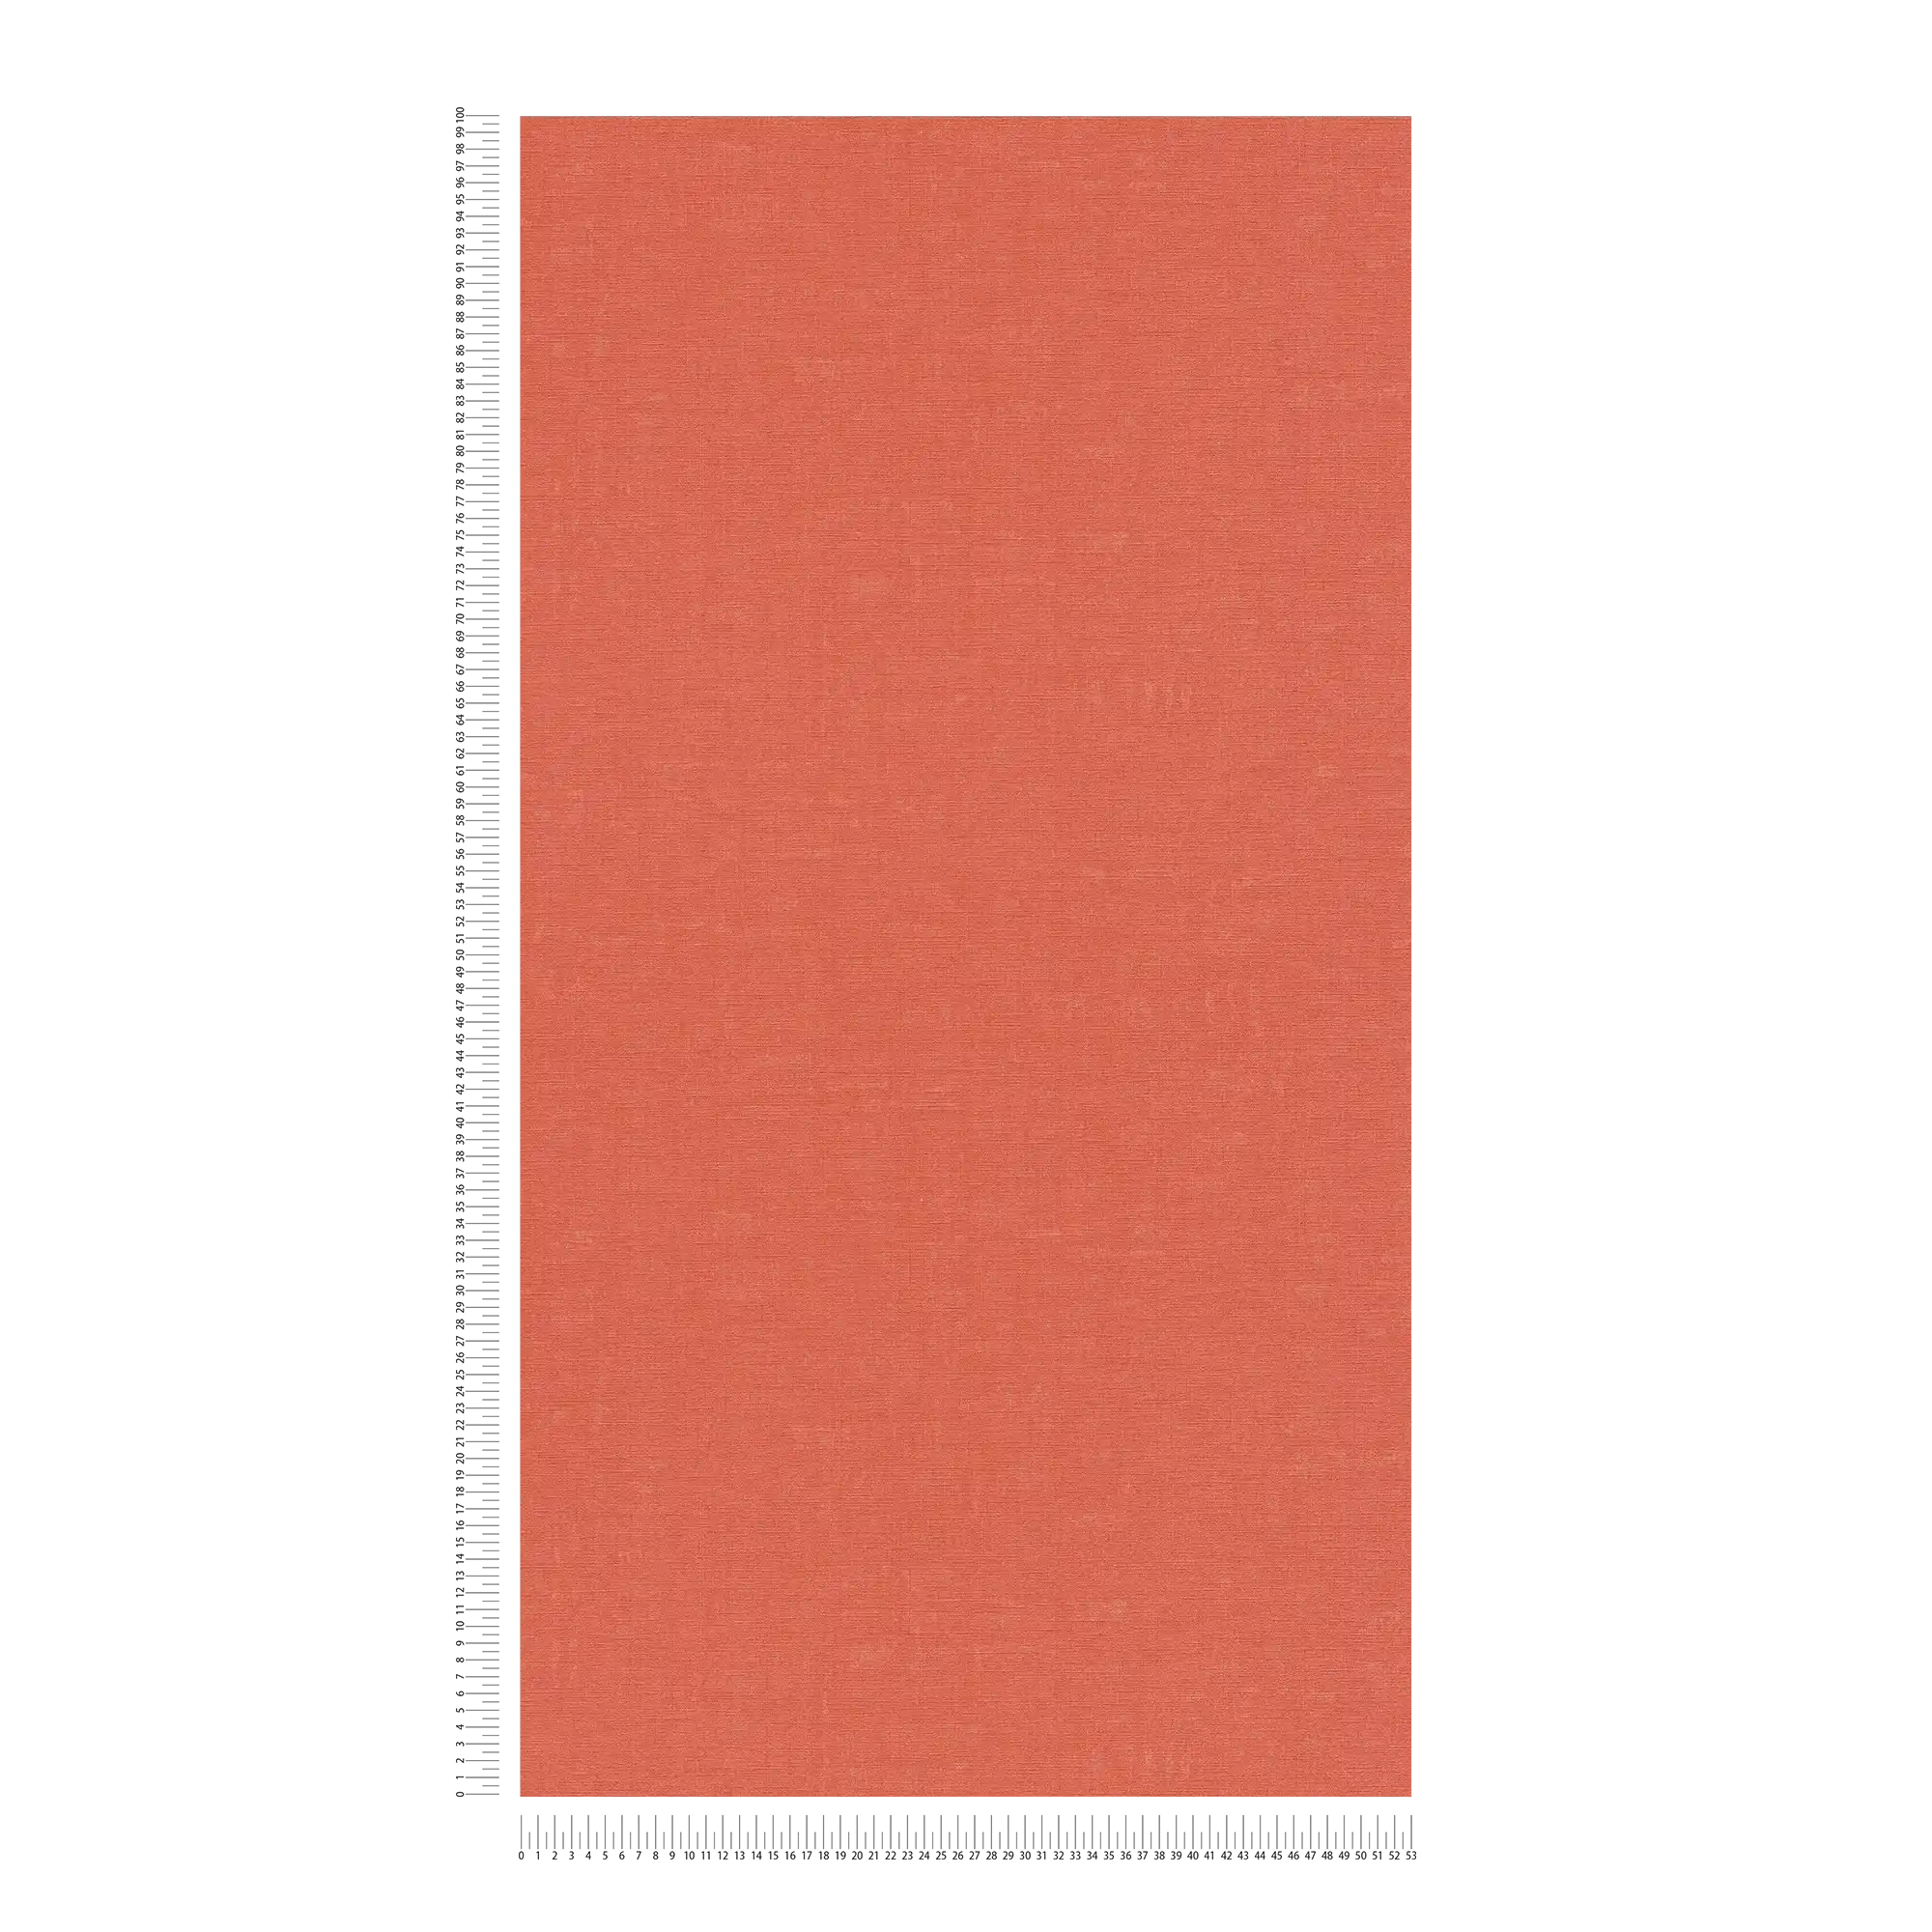             Papier peint uni avec motif chiné - orange, rouge
        